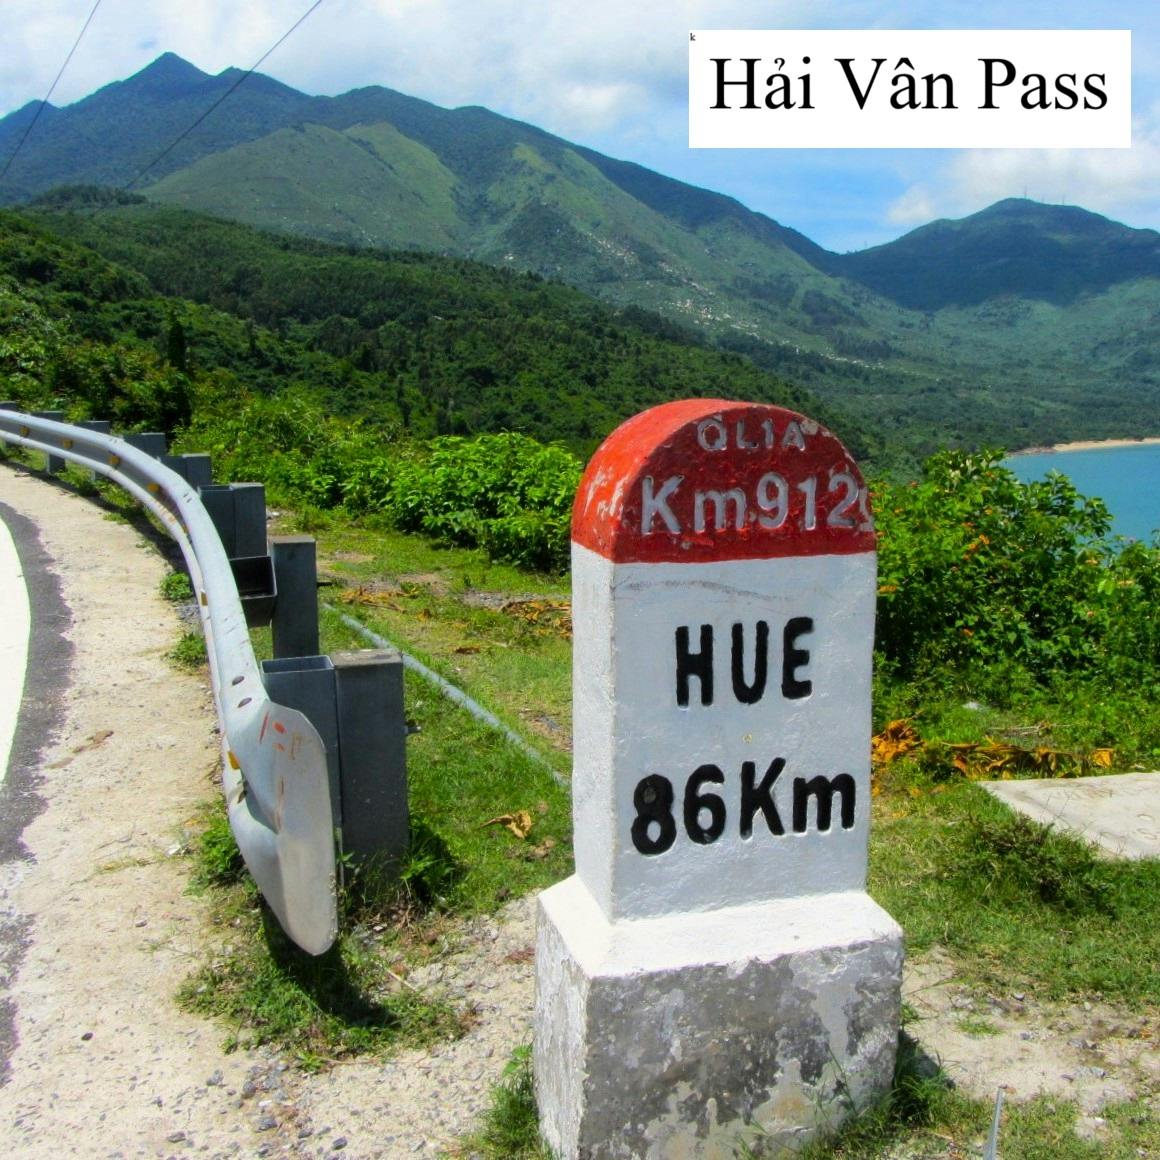 The Hai Van Pass, Motorbike Guide, Vietnam